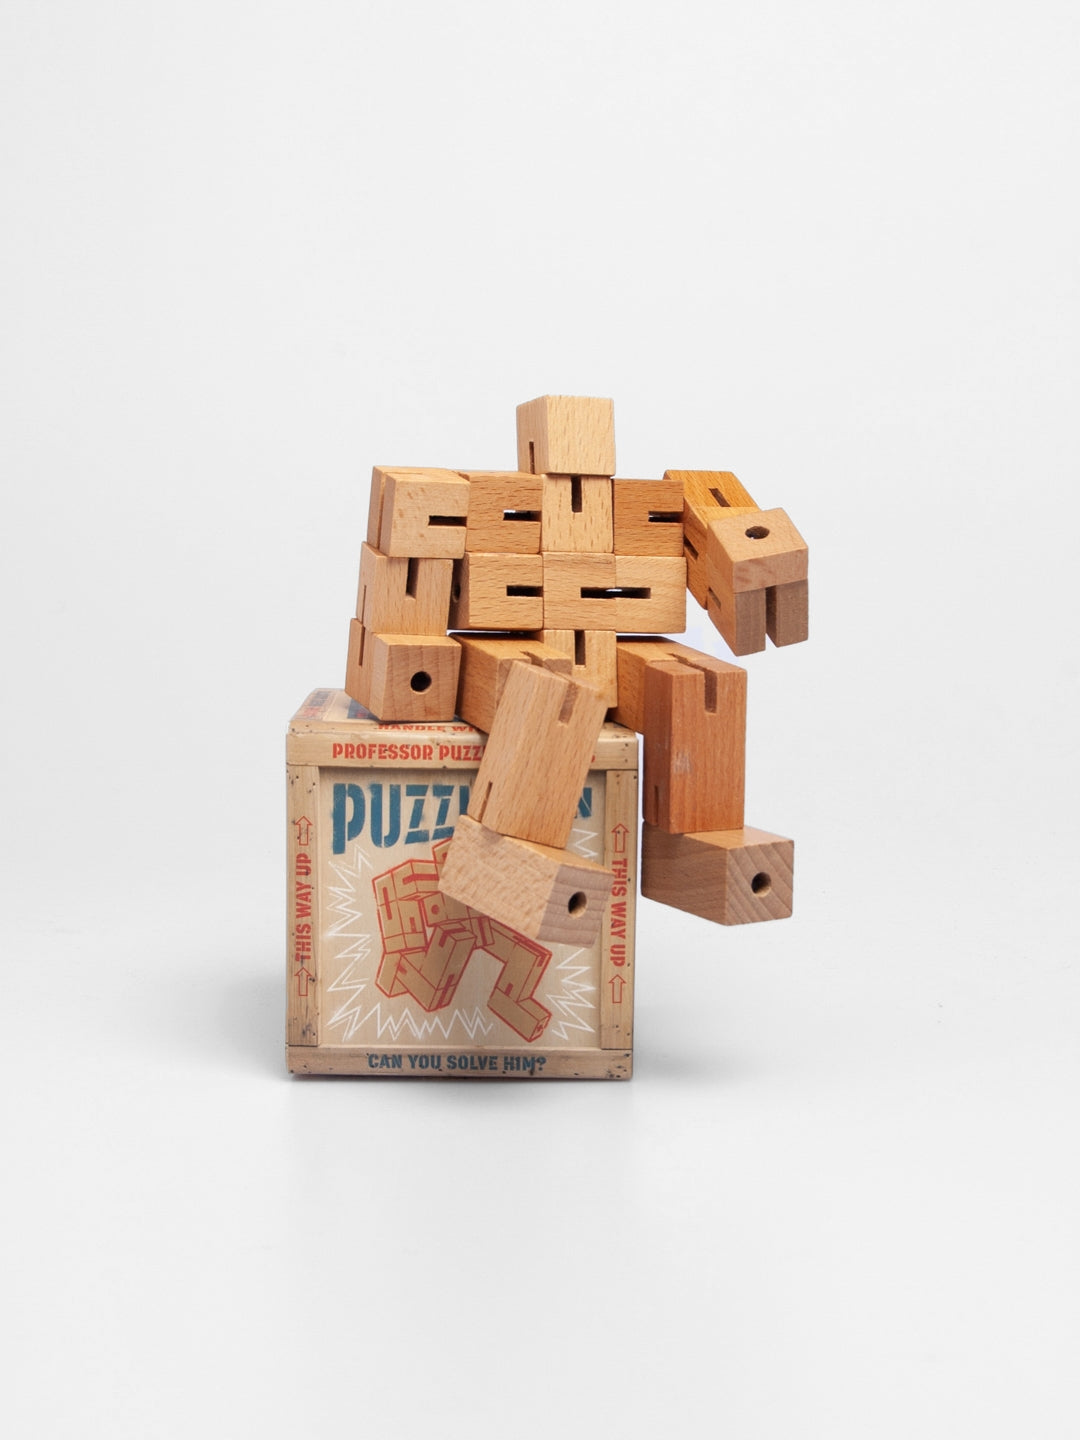 Puzzle Man Cube - Professor Puzzle